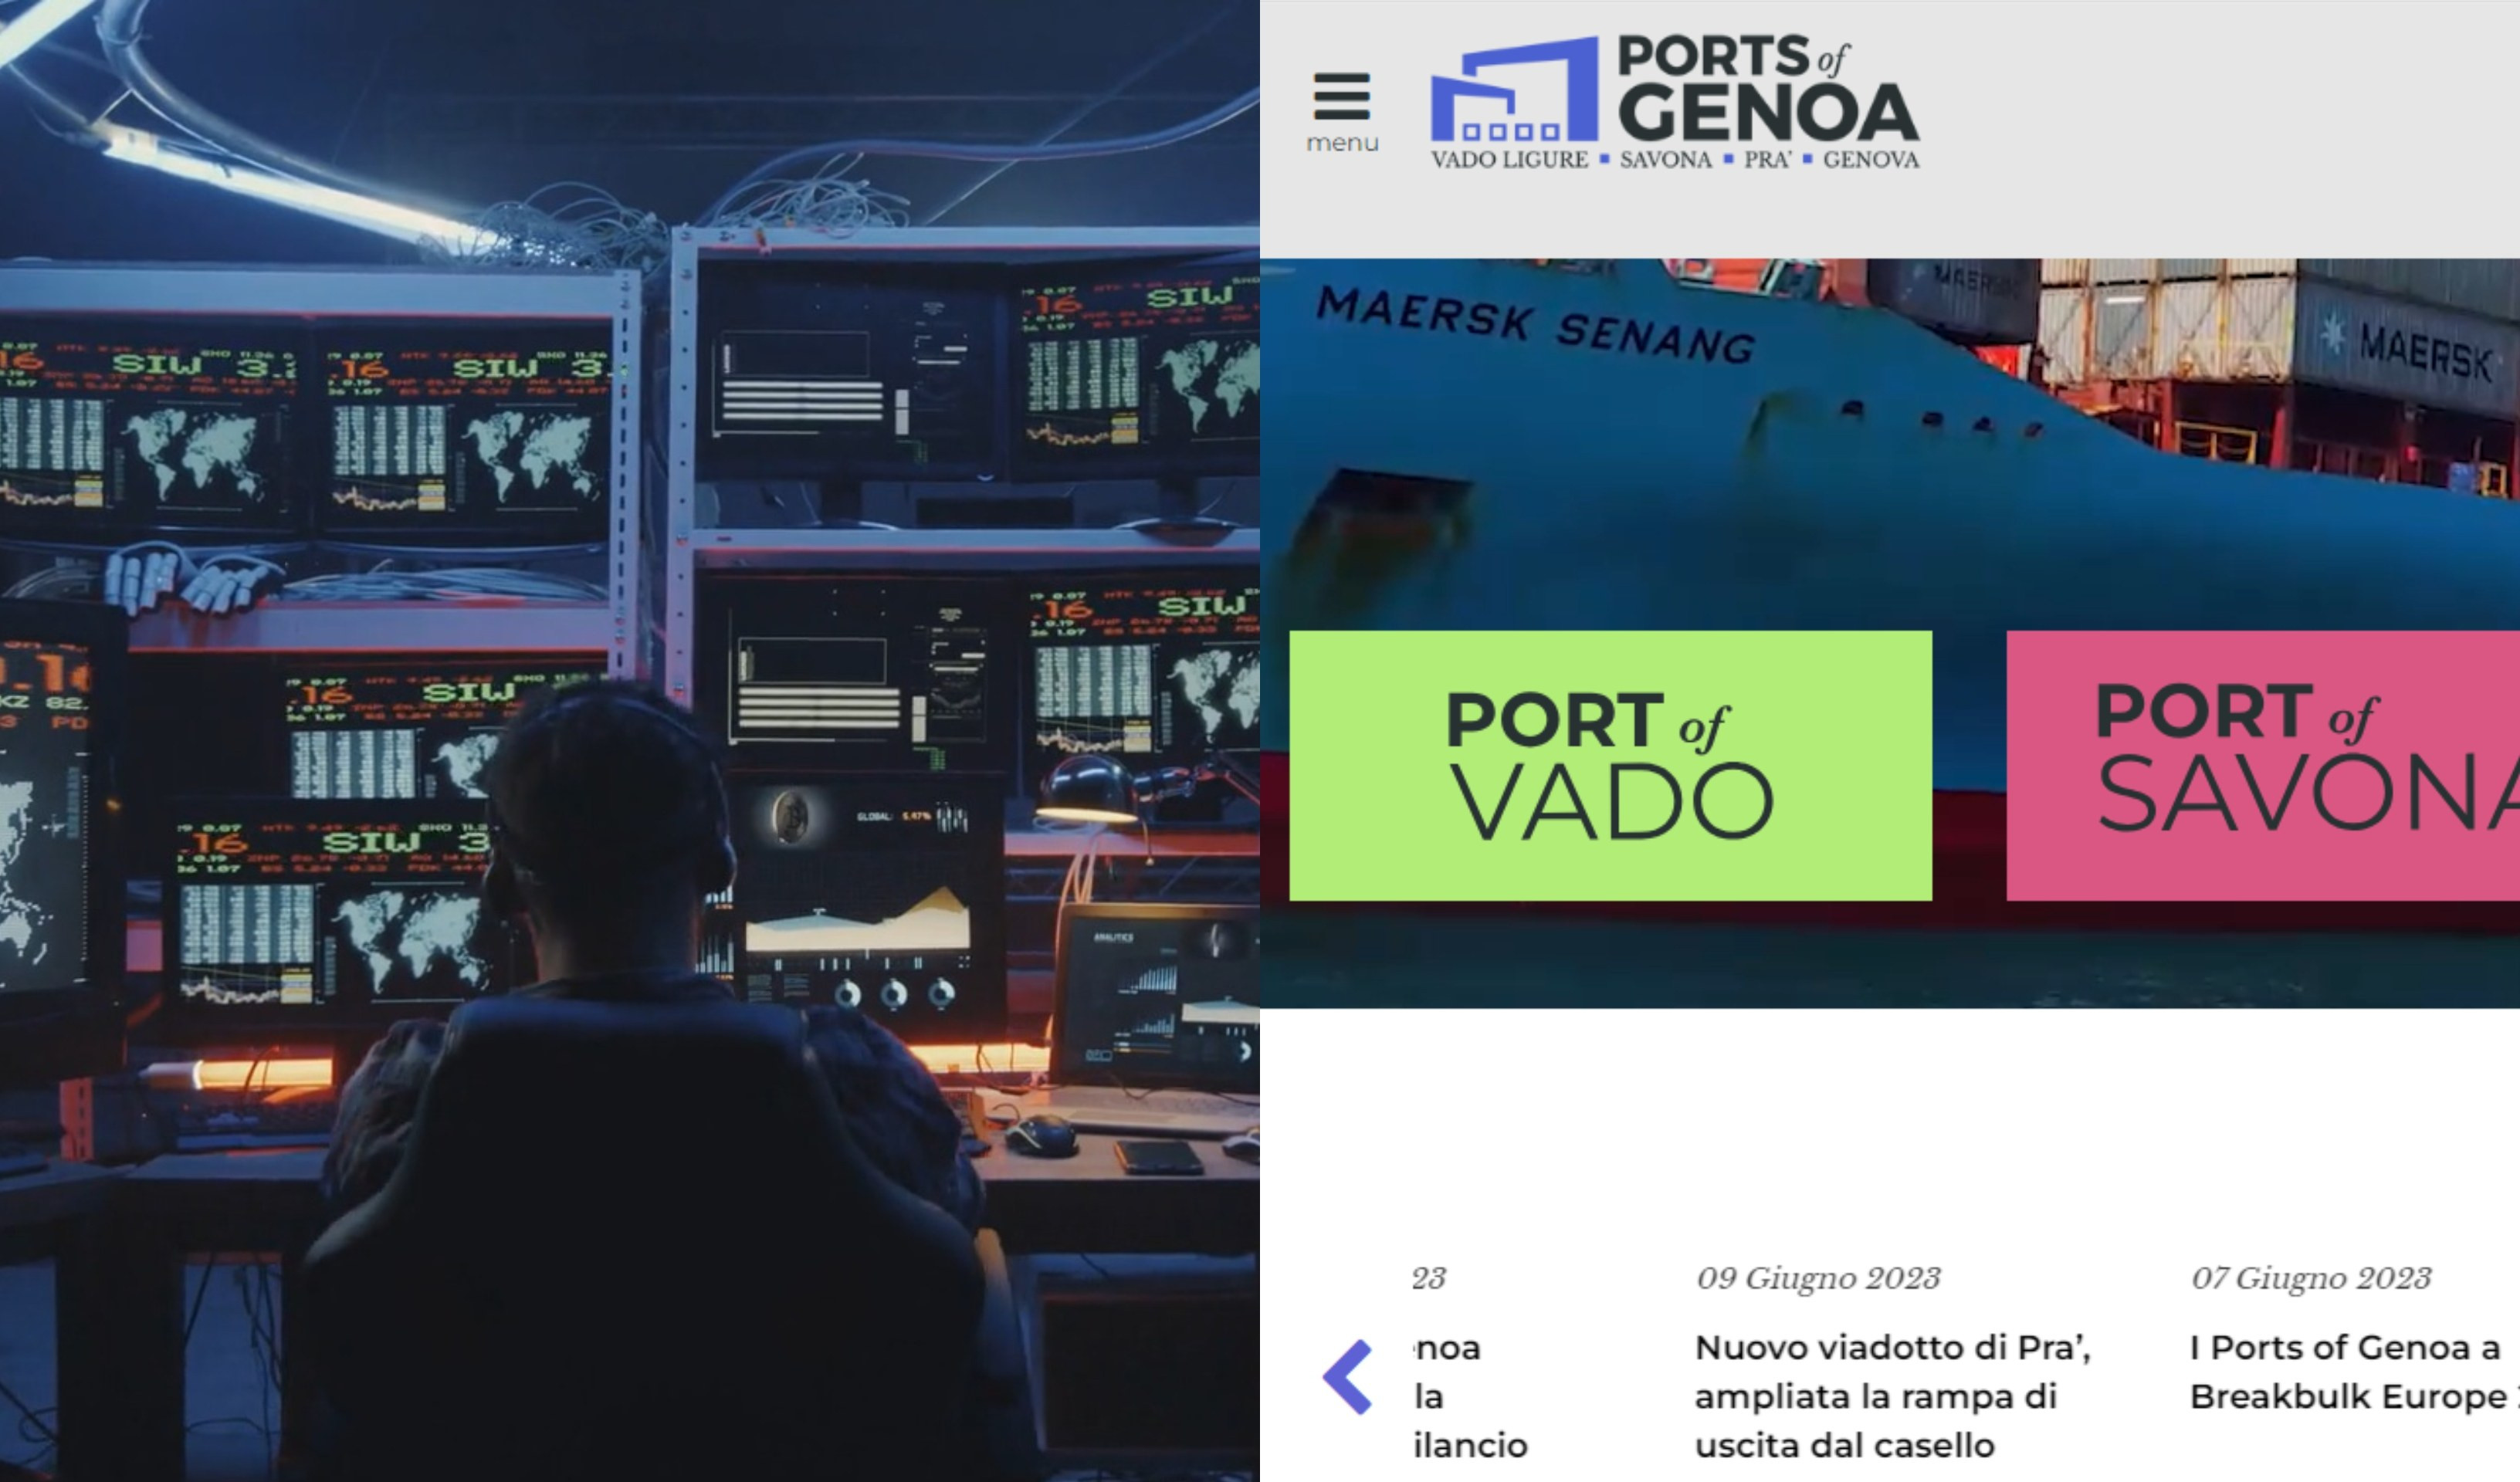 Cyber attacco ai porti, quello di Genova resiste grazie a Liguria Digitale